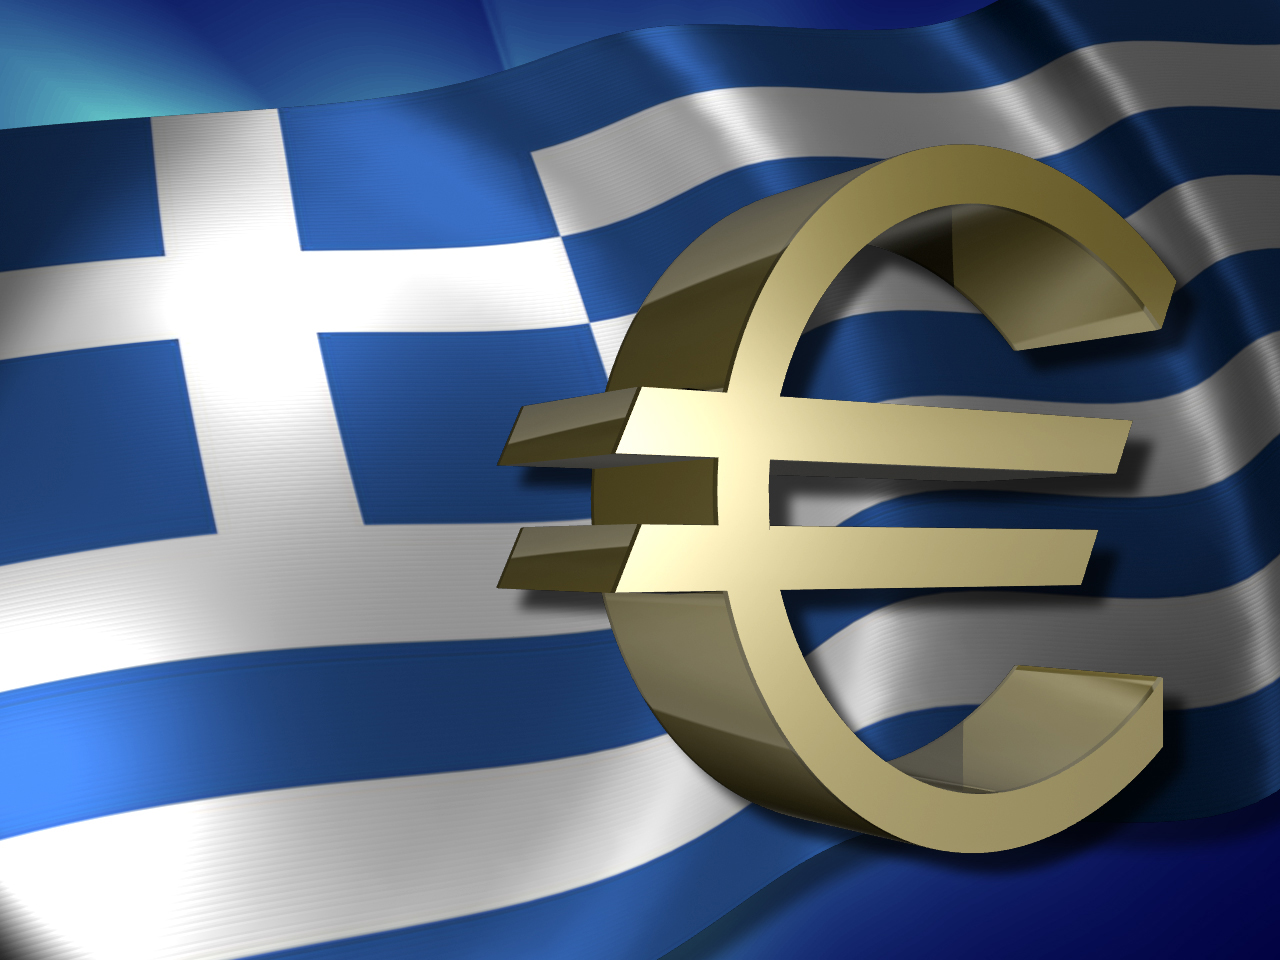 Η επίσκεψη Μέρκελ βάζει τέλος στην αβεβαιότητα σχετικά με την παραμονή της Ελλάδας στο ευρώ